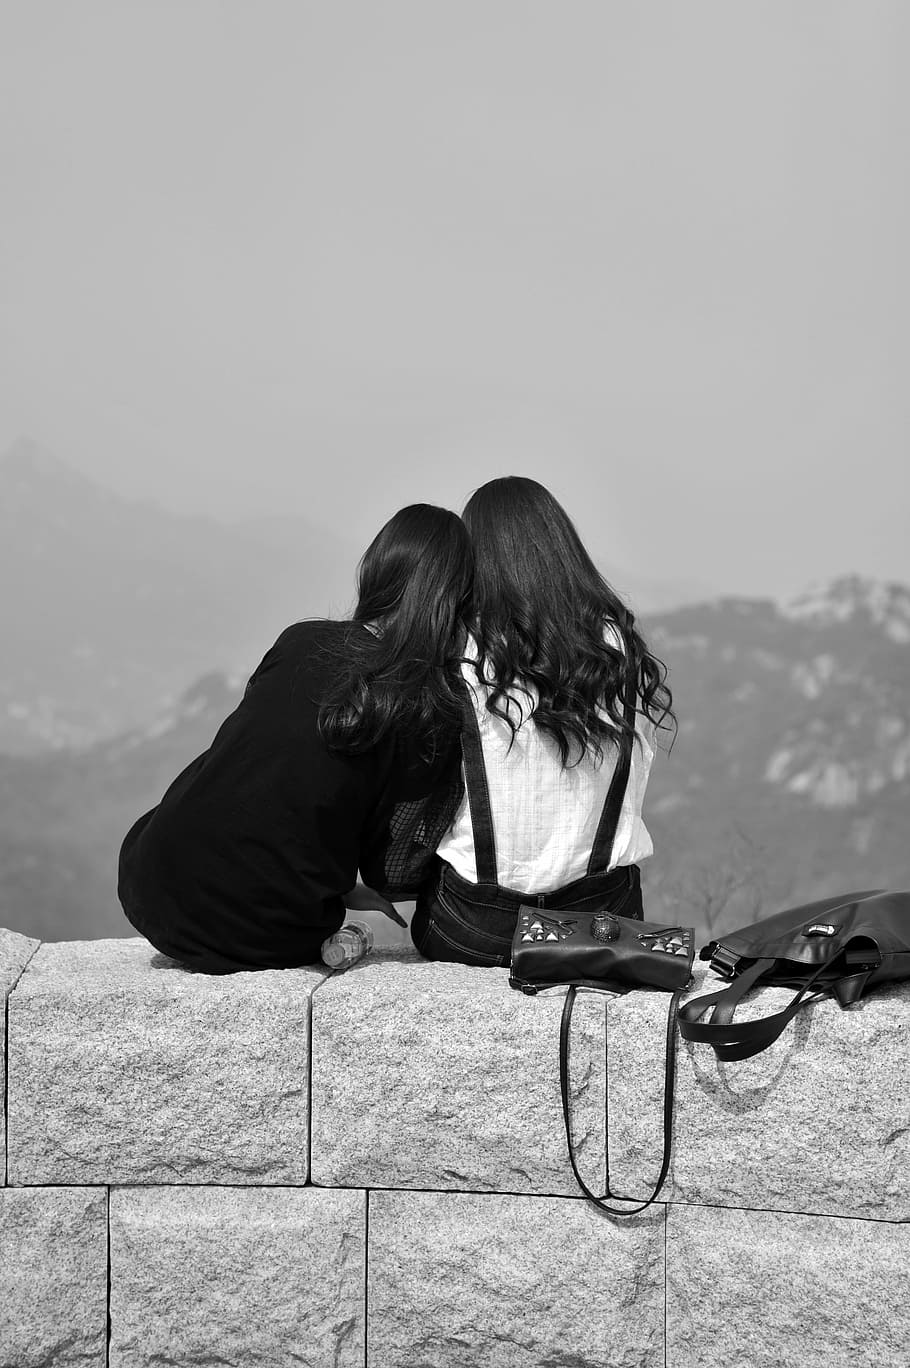 foto em escala de cinza, duas, mulheres, sentado, parede de bloco de concreto, amigos, amizade, isolado, assistir novamente, preto e branco